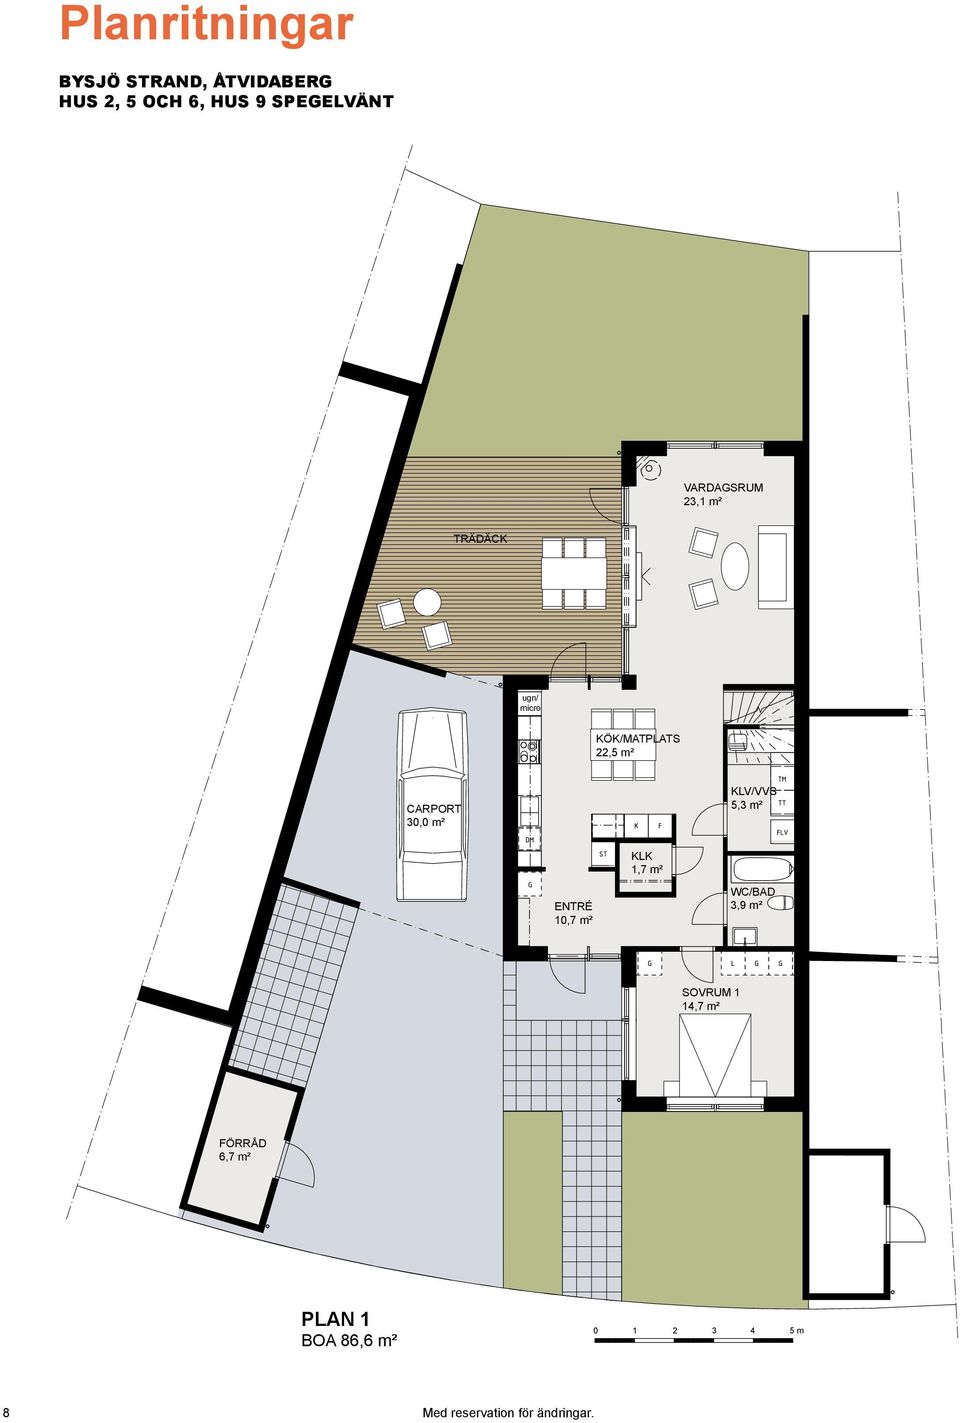 1,7 m² ENTRÉ 10,7 m² WC/BAD 3,9 m² SOVRUM 1 14,7 m² FÖRRÅD 6,7 m² PLAN 1 BOA 86,6